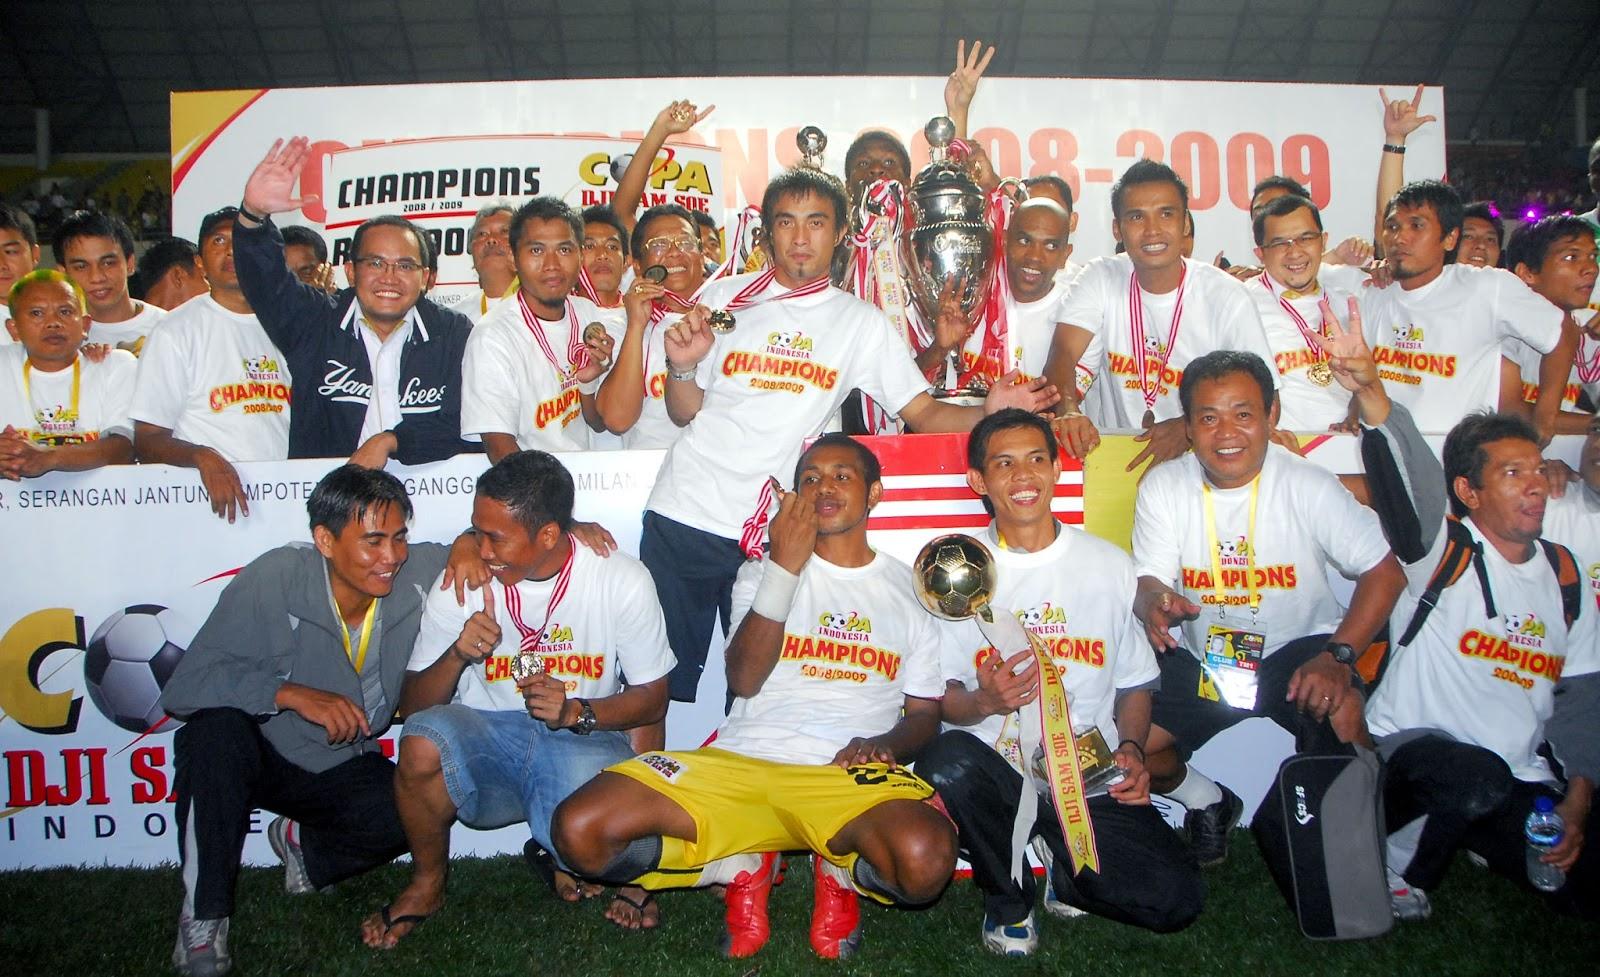 Srwijaya FC ketika menjuarai Piala Indonesia musim 2008-2009 Copyright: Sriwijaya FC